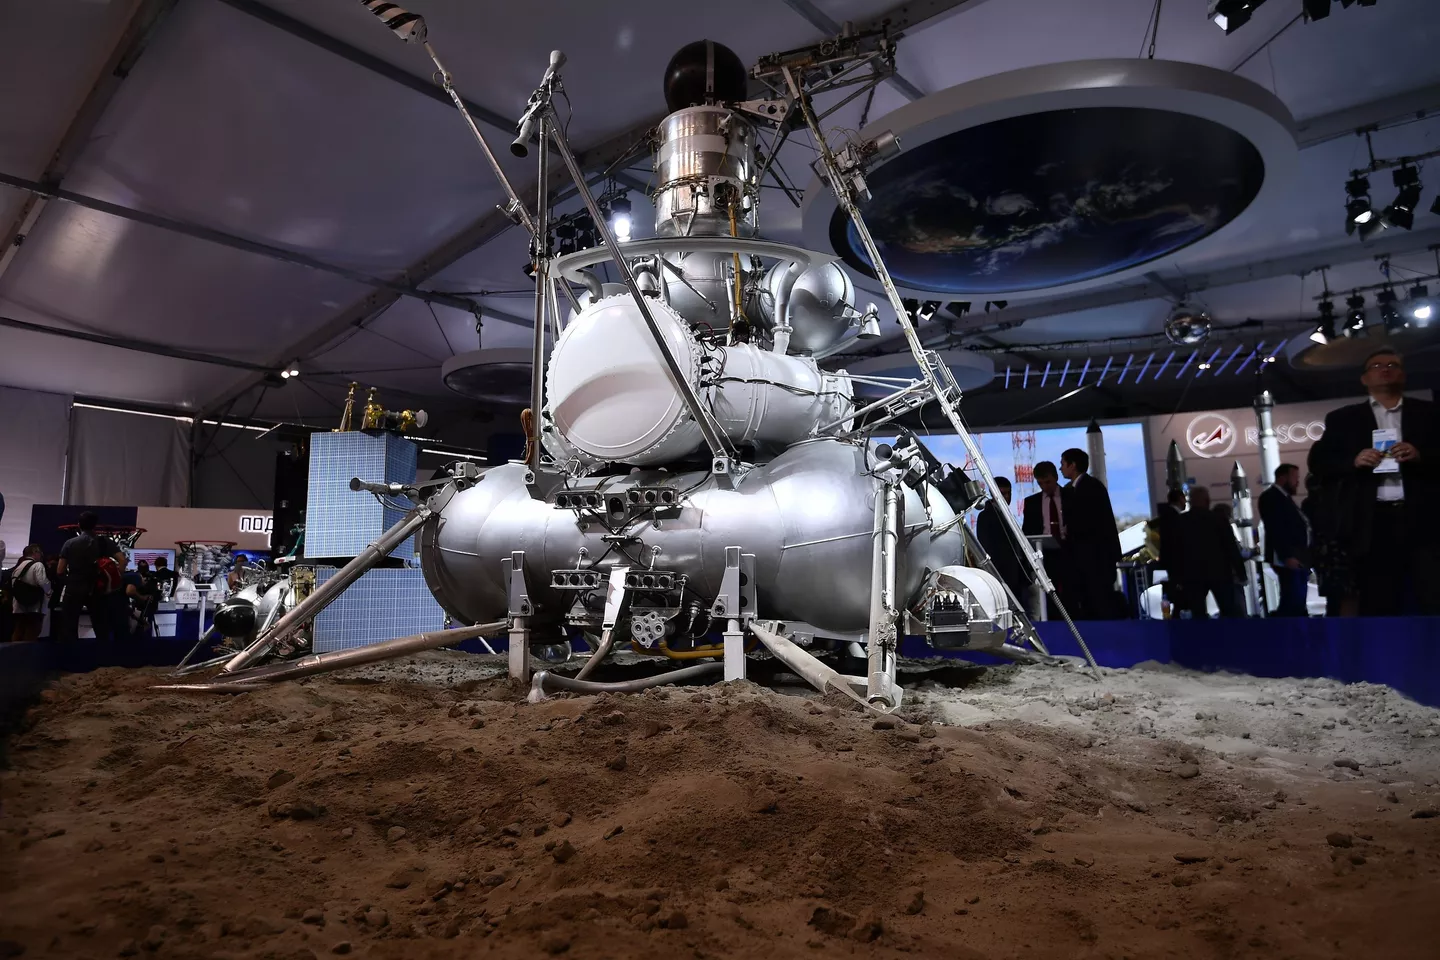 Запуск первой в мире автоматической межпланетной станции. Луна-24 автоматическая межпланетная станция. Луна-16 автоматическая межпланетная станция. Луна-25 космический аппарат. Конструкция станции Луна 24.